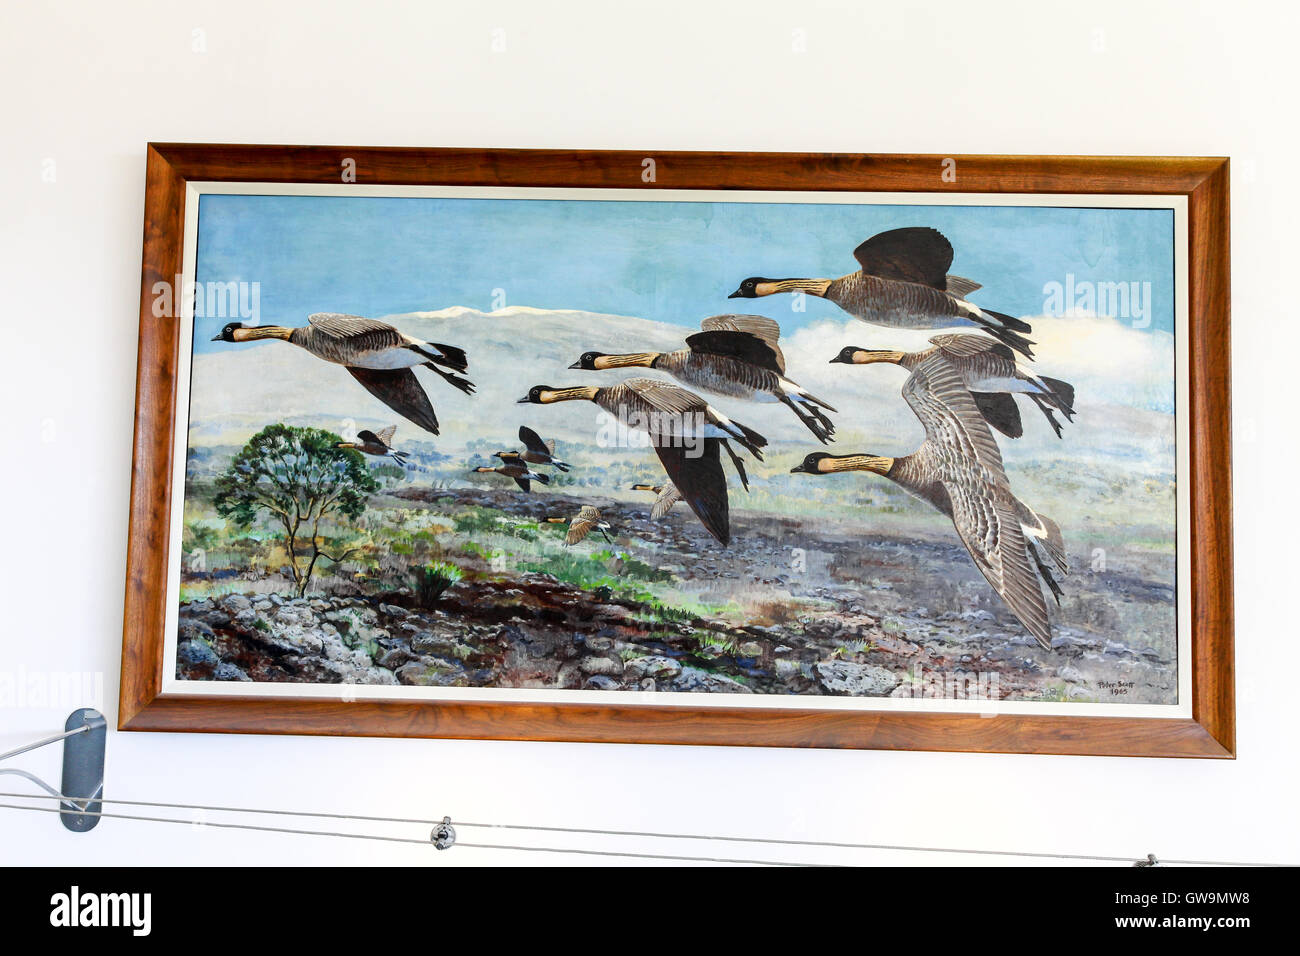 Sir Peter Scott's peinture 'Nenes sur Mauna Loa" au centre de Slimbridge Wetland, Slimbridge, Gloustershire Banque D'Images